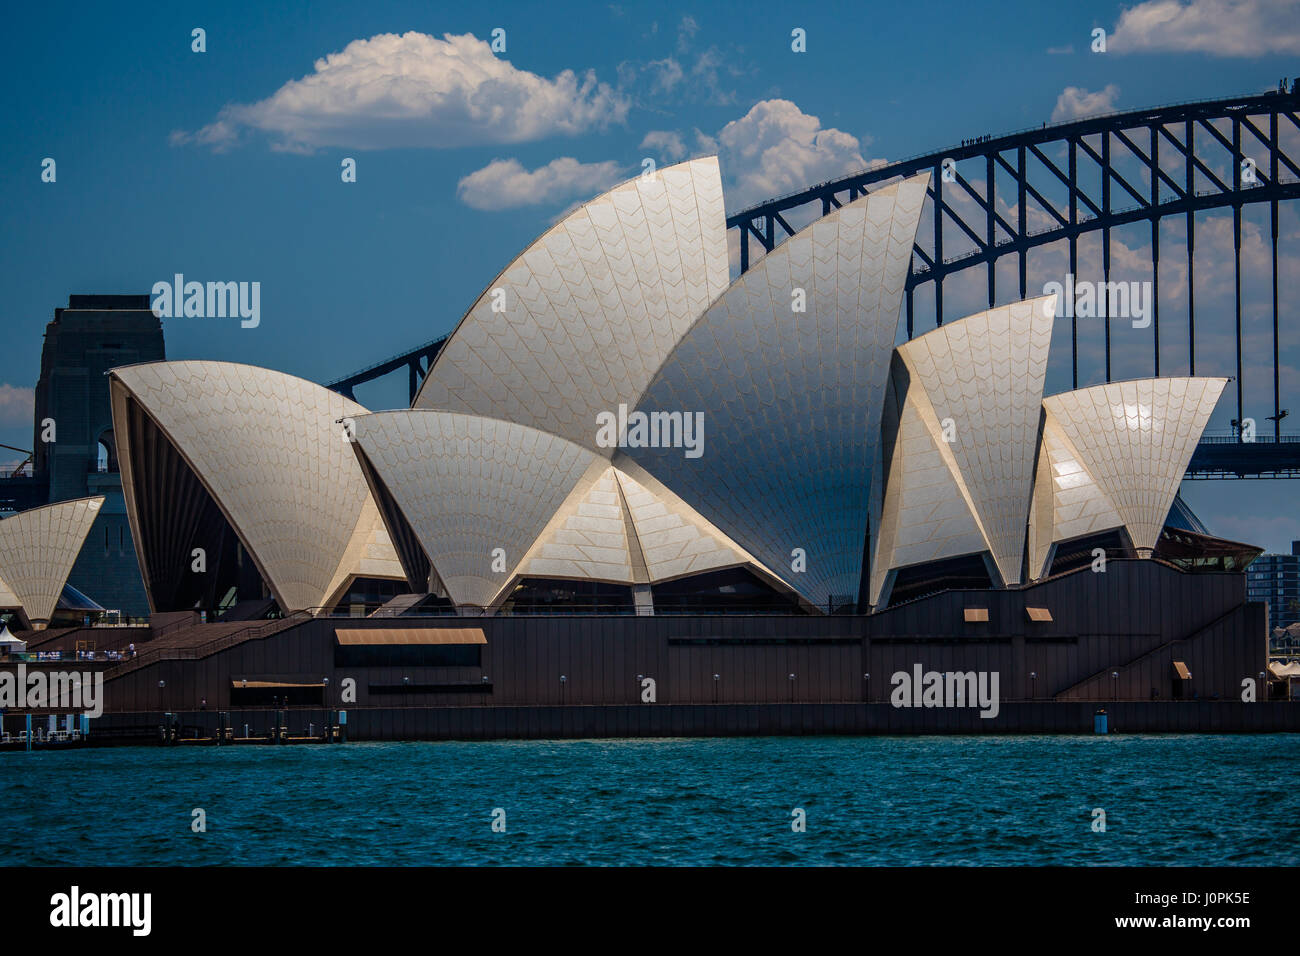 The iconic architecture of the Sydney Opera House, Sydney, Australia Stock Photo